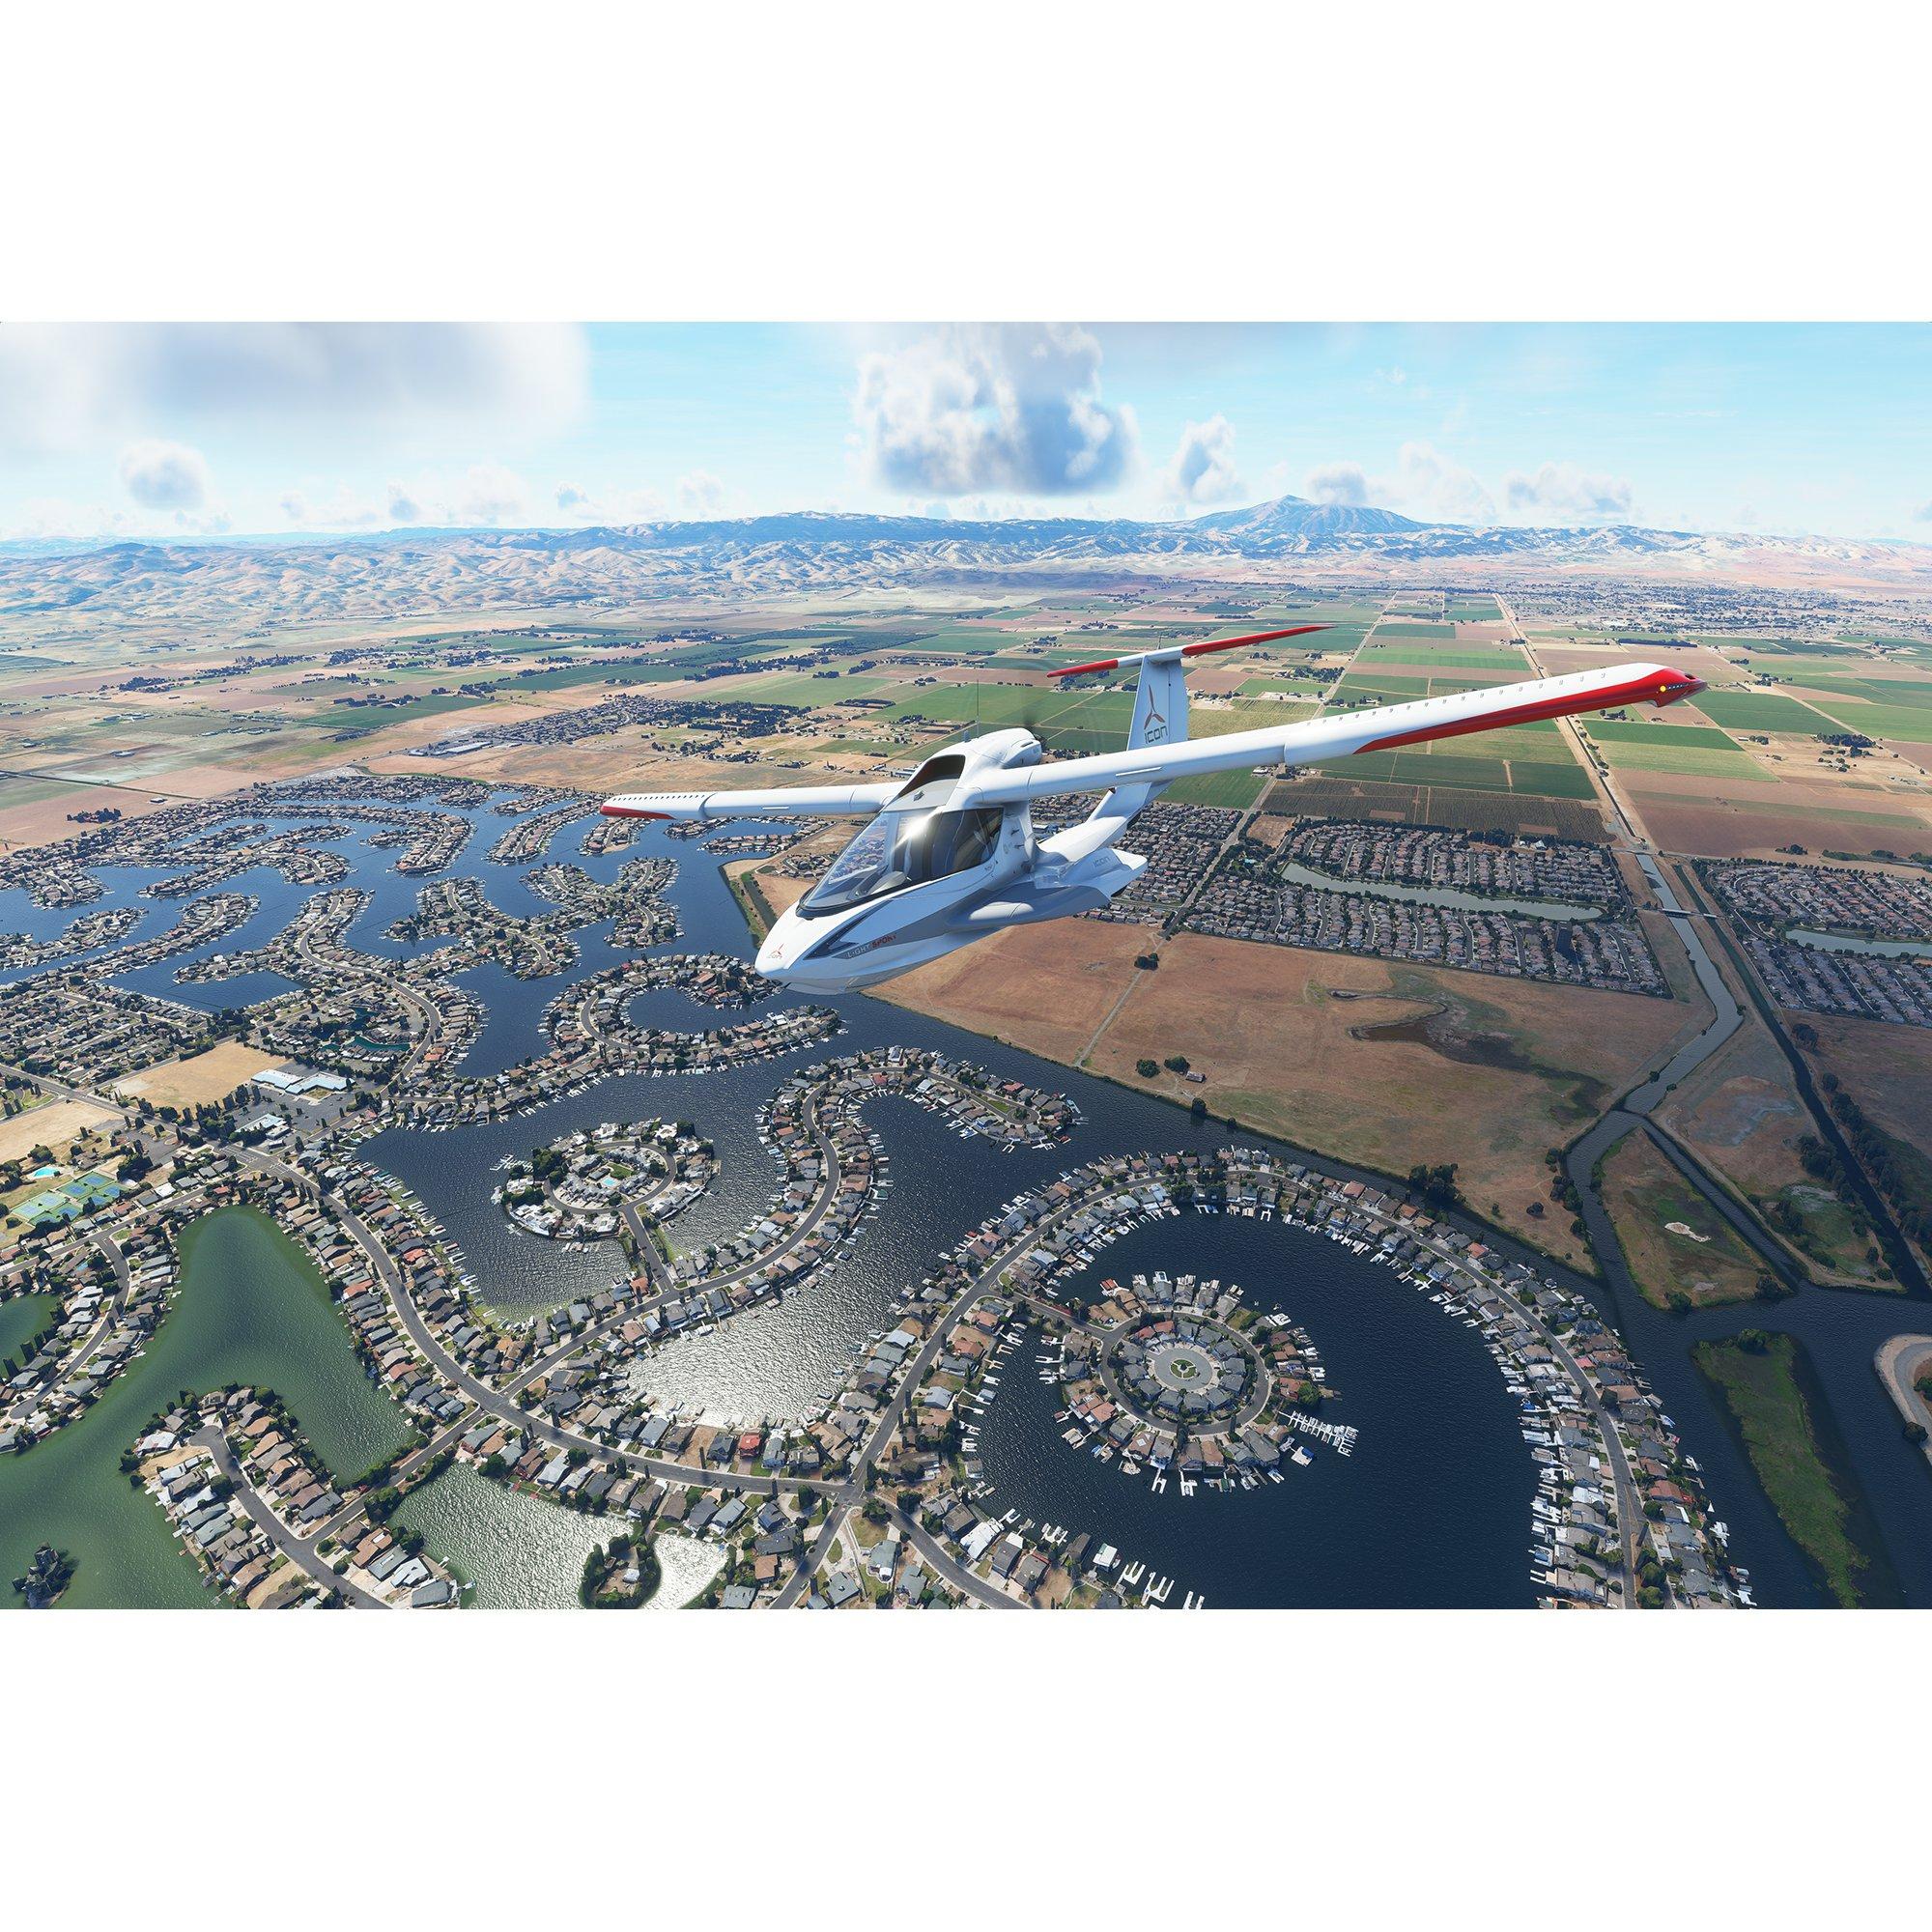 Flight Simulator 2020' locations: Players share stunning replicas